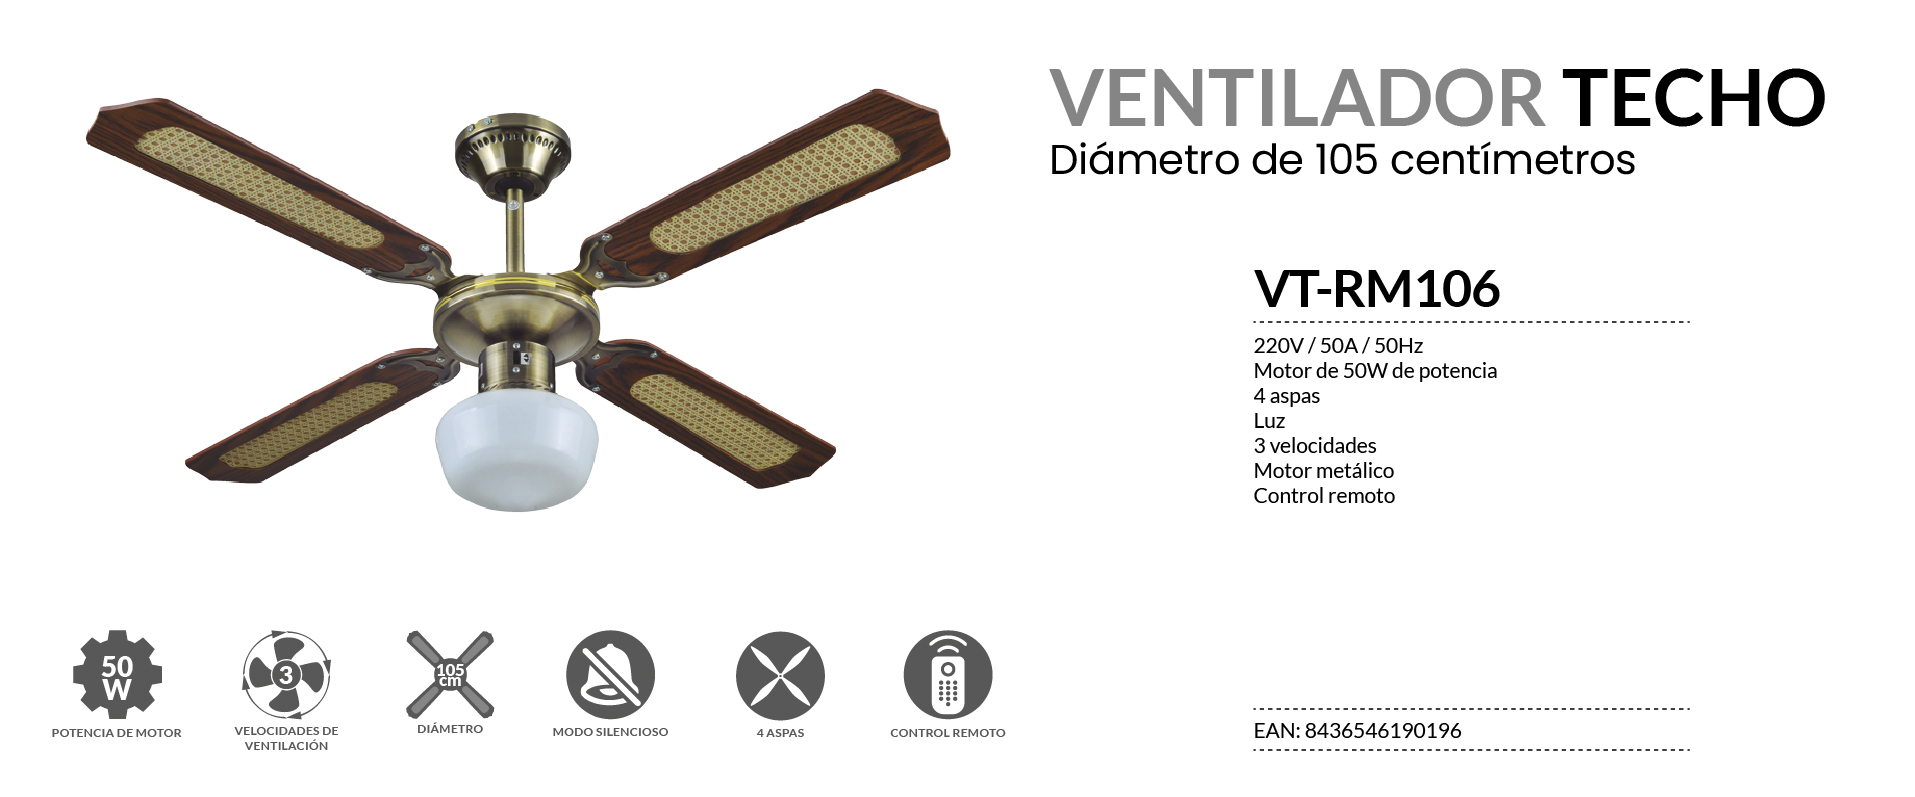 42 3 velocidades Luz Control Remoto 50W Blanco IN Ventilador Techo INFINITON VT/RB108 106cm 